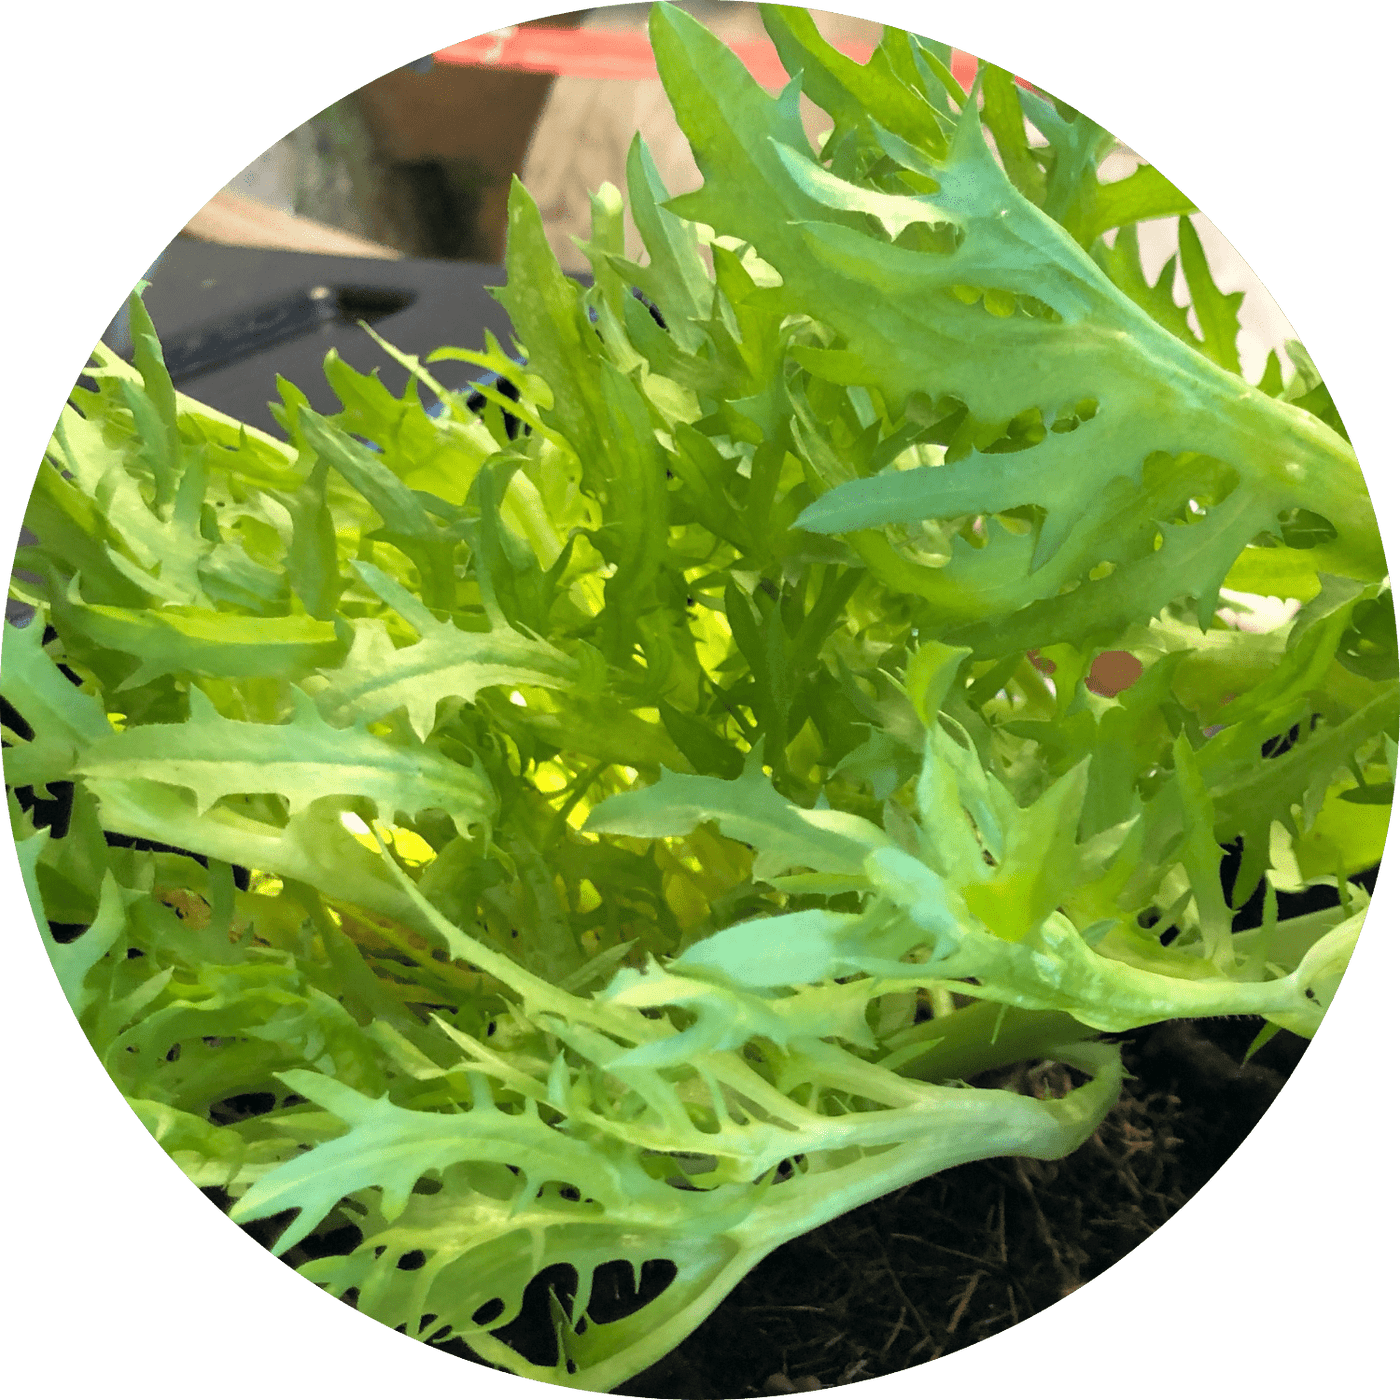 Frisee (Leafy Green)